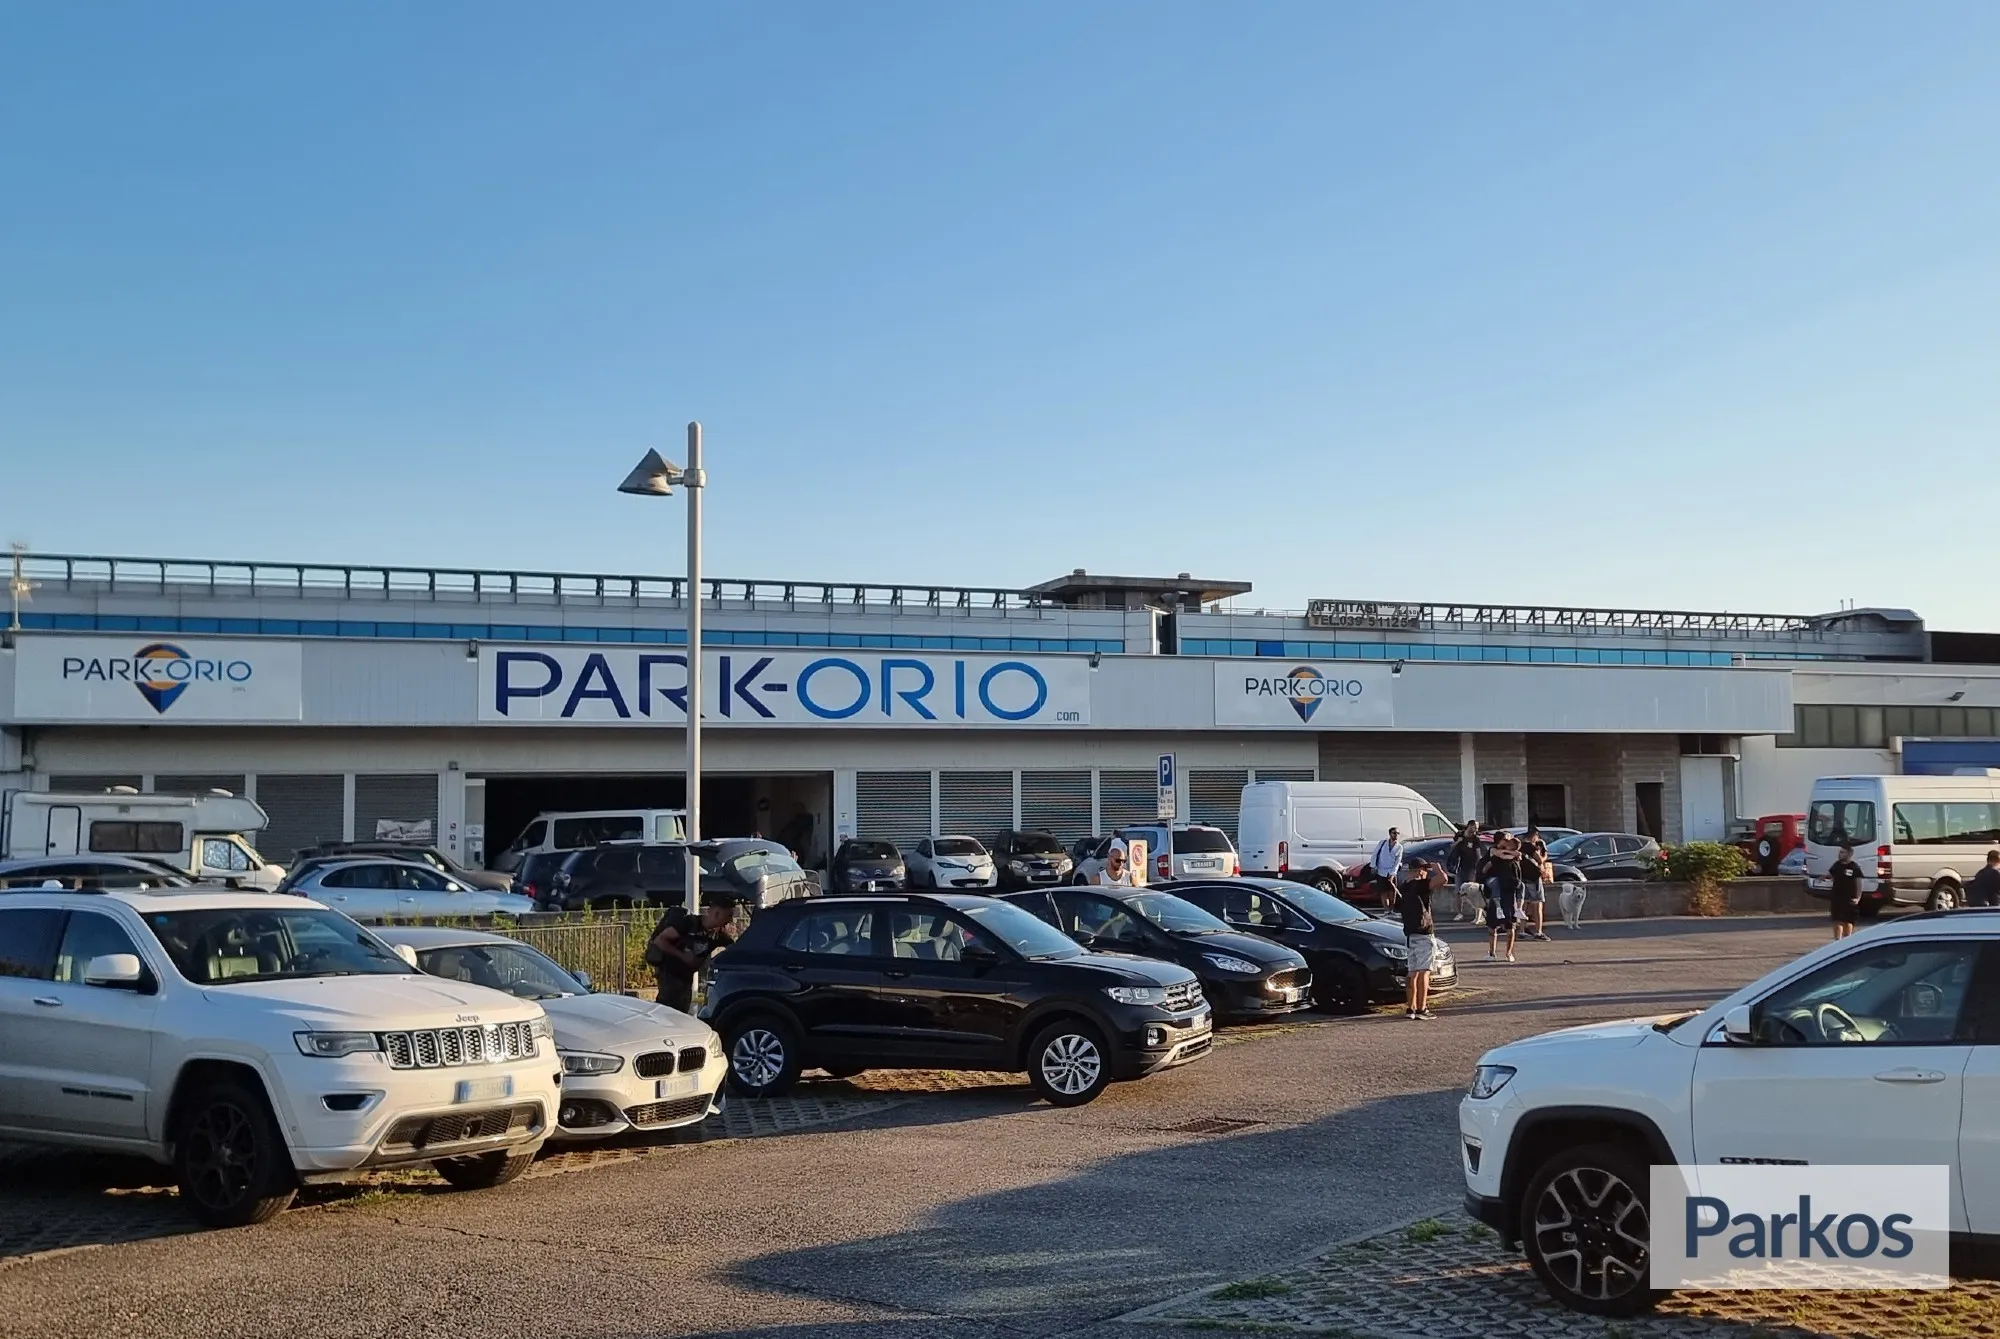 Park-Orio (Paga online o in parcheggio) - Bergamo Orio al Serio Parking - picture 1